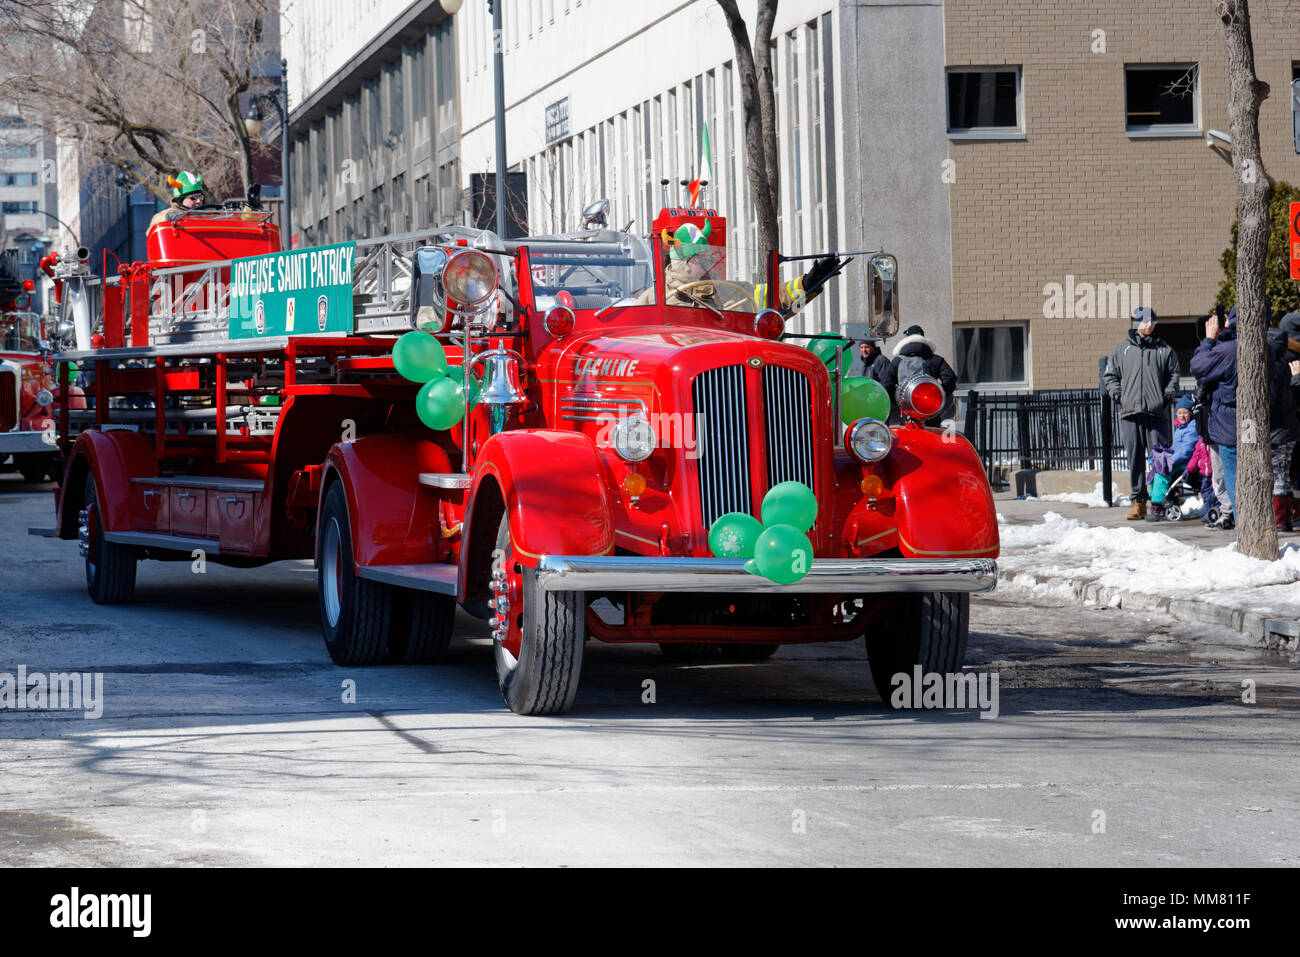 Un vintage Bickle-Seagram Lachine motore Fire in Montreal il giorno di San Patrizio parade Foto Stock